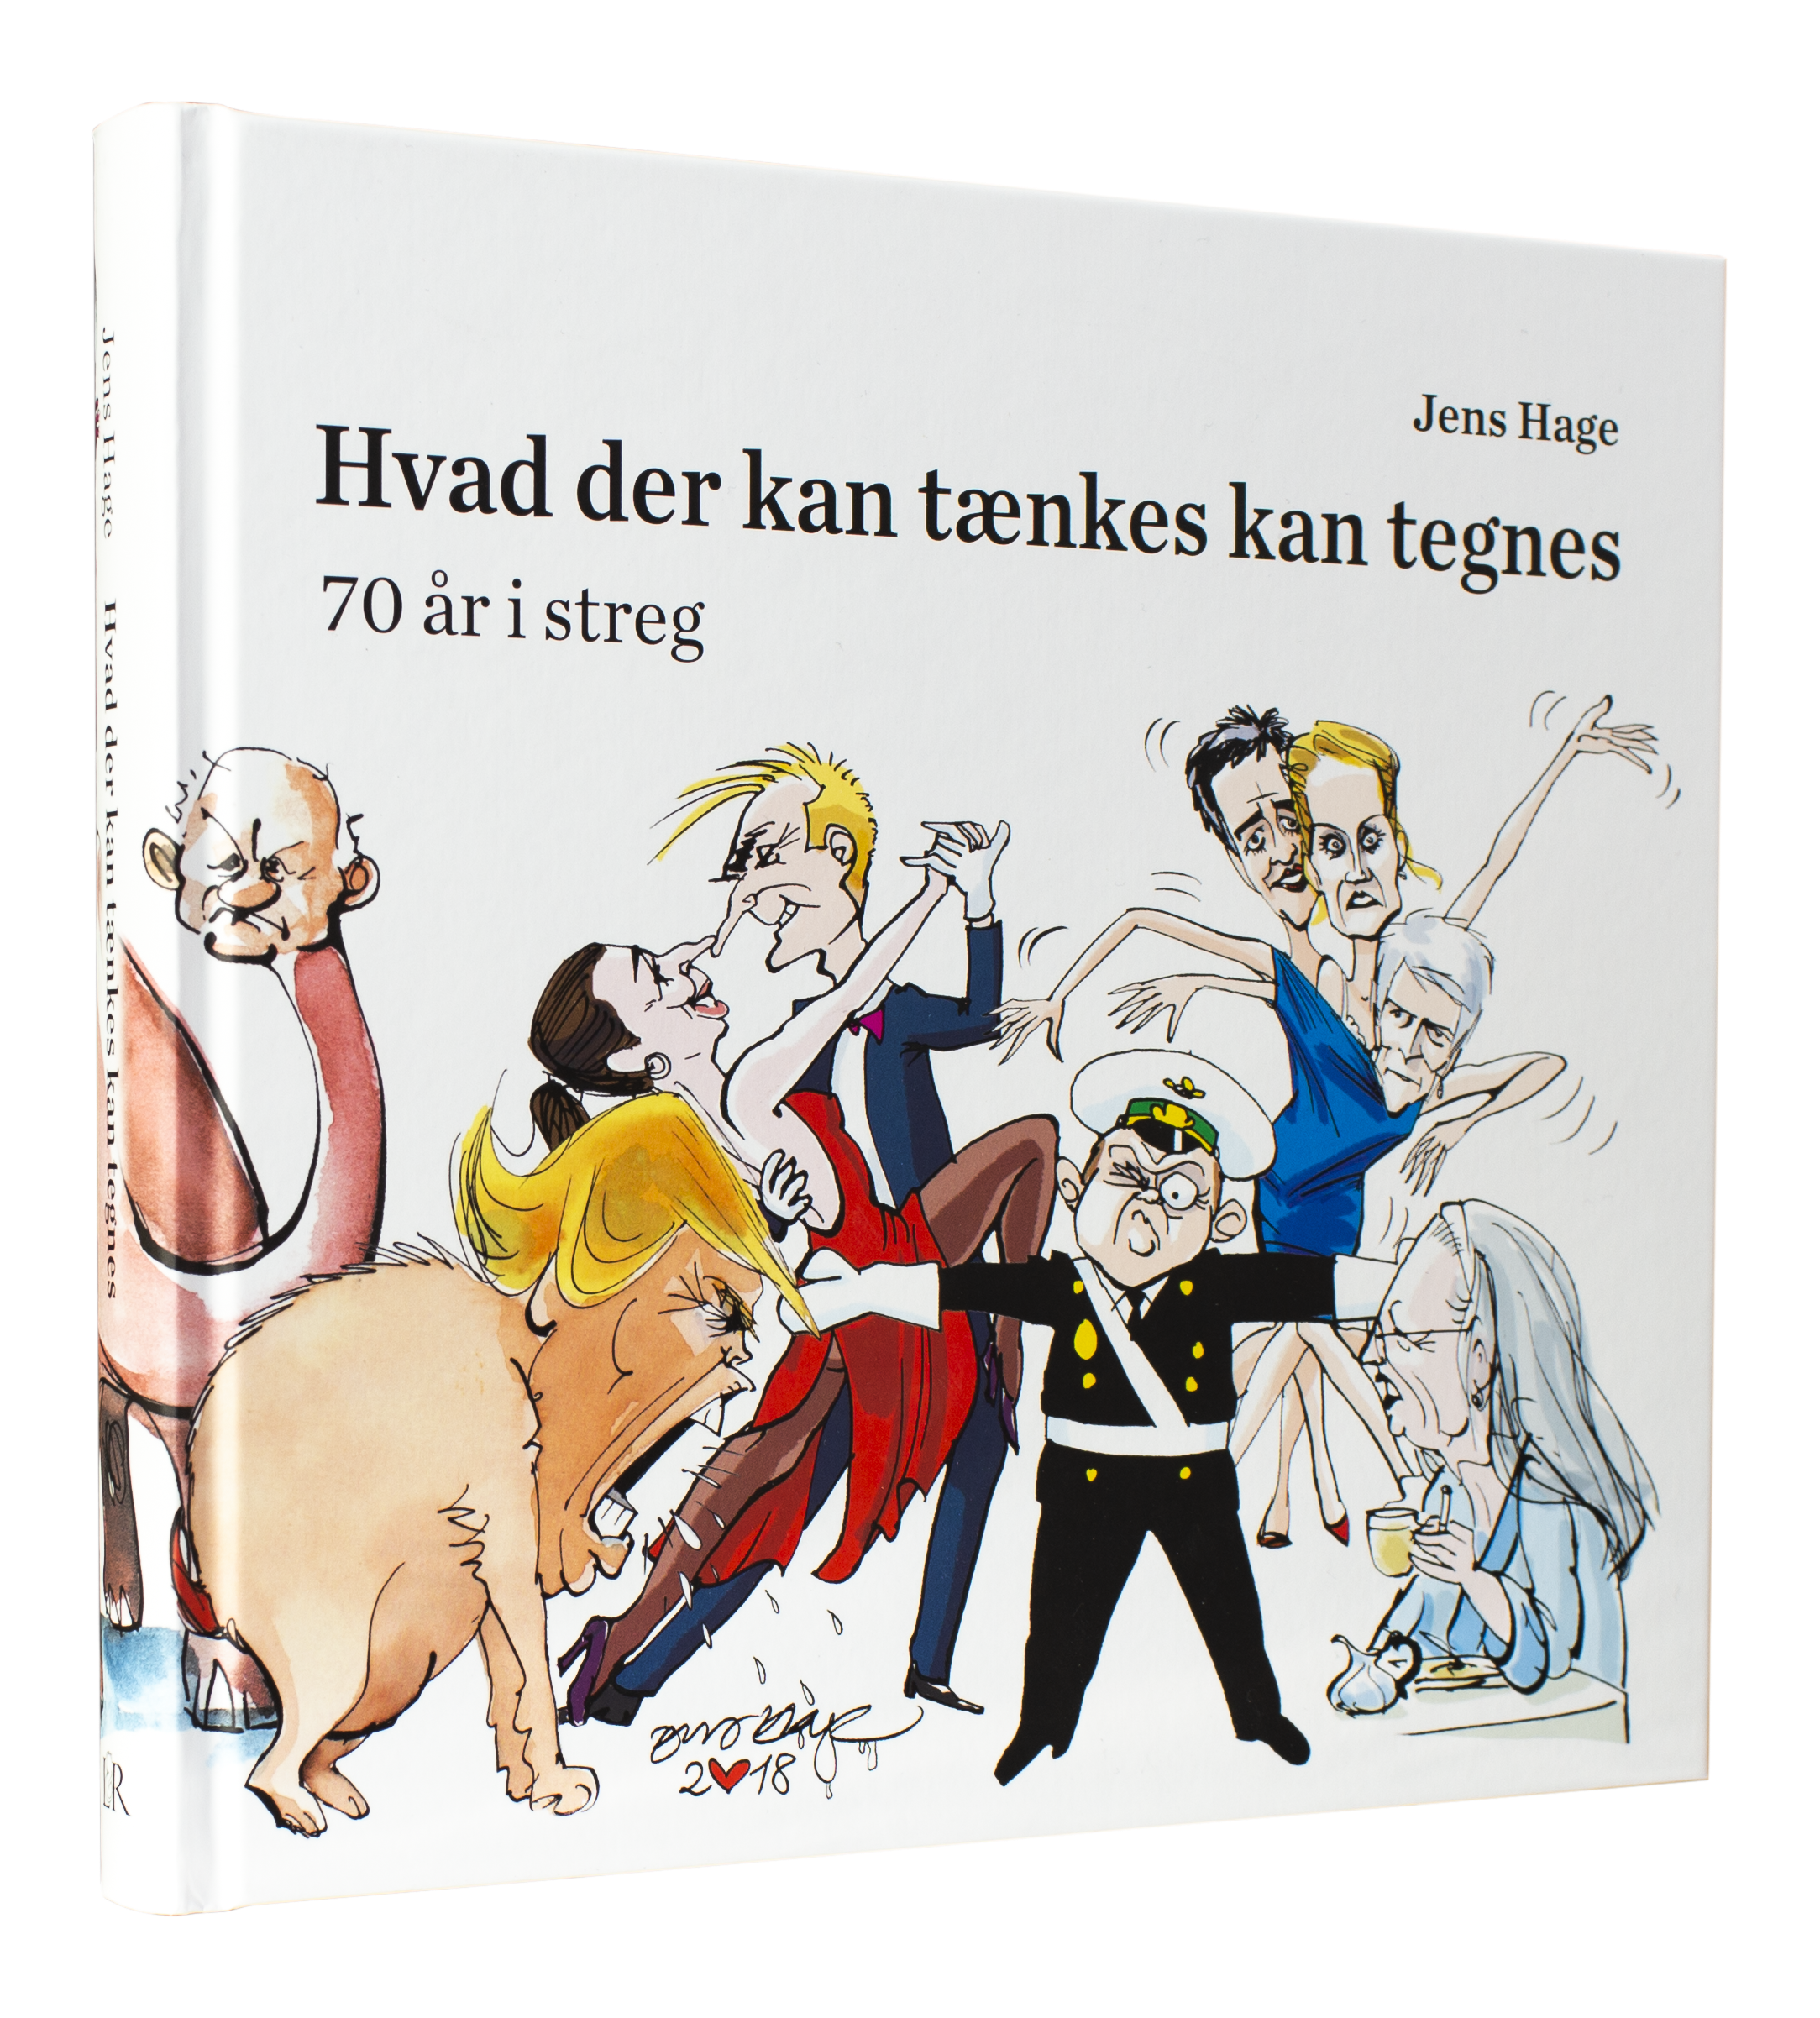 Satiretegner Jens Hage: Jeg tager mig ikke af 'ævle bævle' på sociale medier